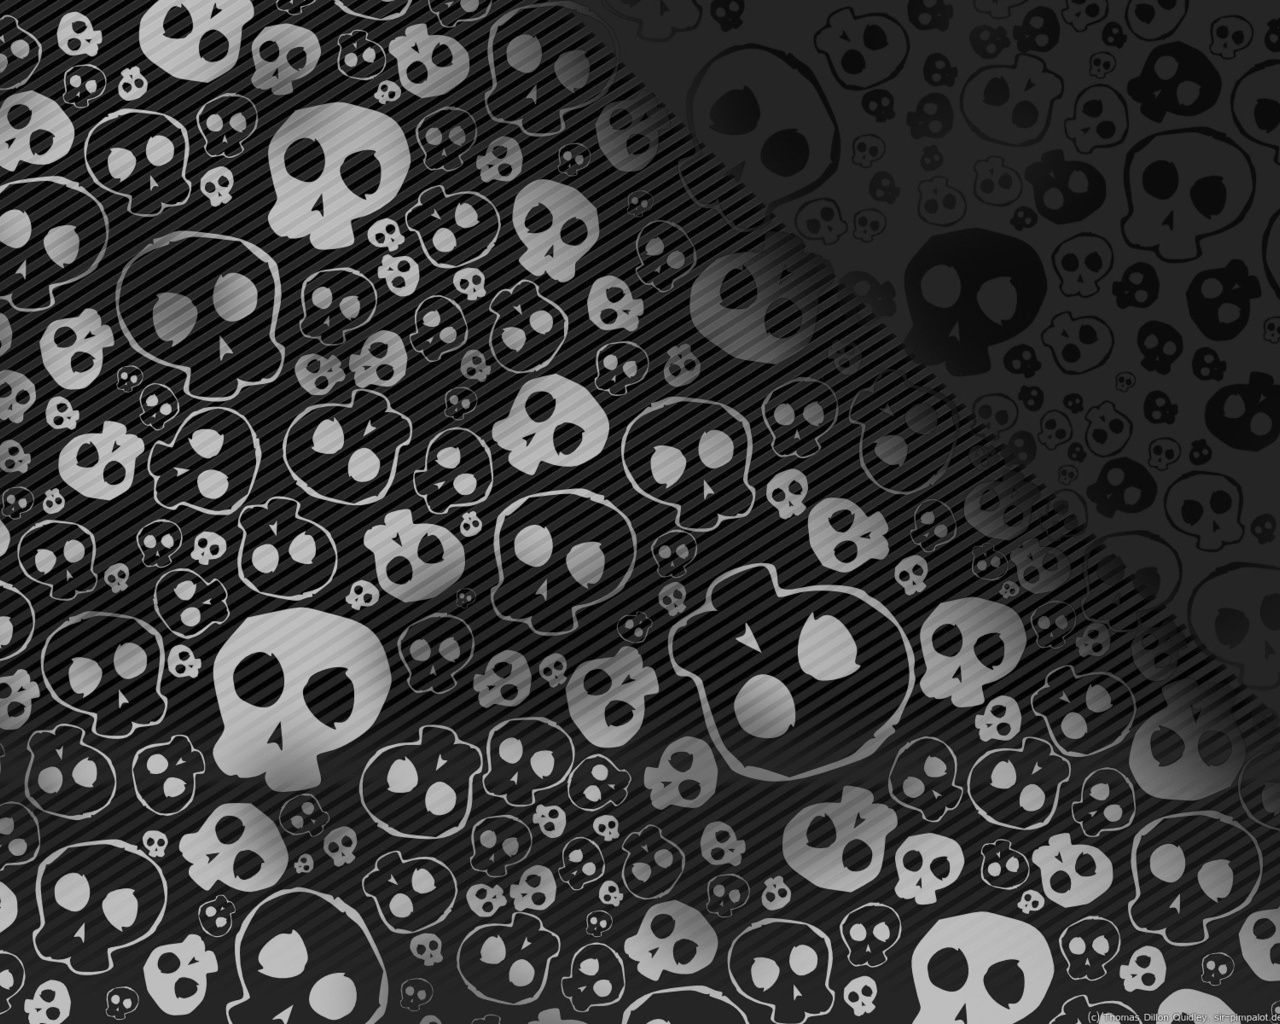 Black and White Skulls Wallpaper - Black Wallpaper (28520501) - Fanpop